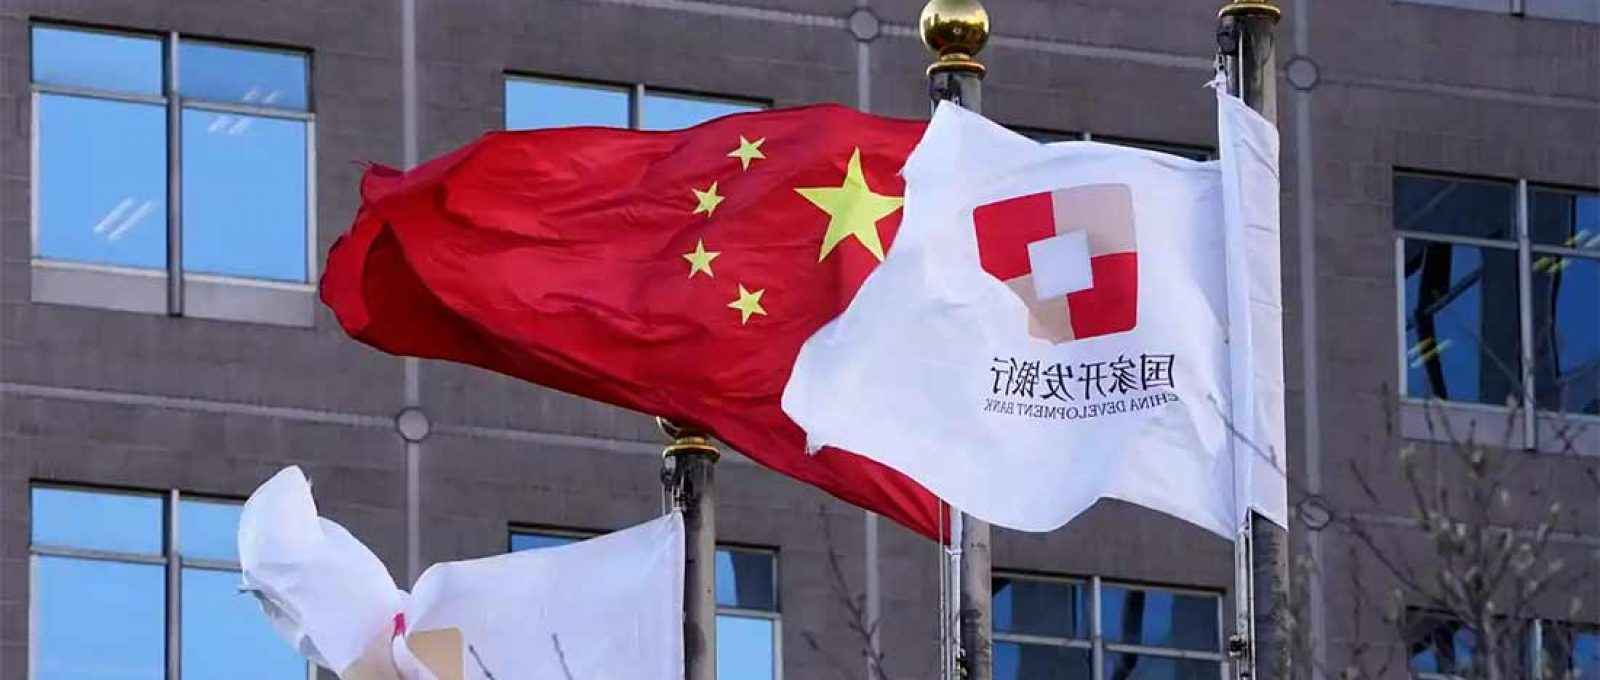 Bandeiras do Banco de Desenvolvimento da China hasteadas perto da bandeira nacional chinesa; a China tem uma variedade de instrumentos de empréstimo à sua disposição (Foto: AP).